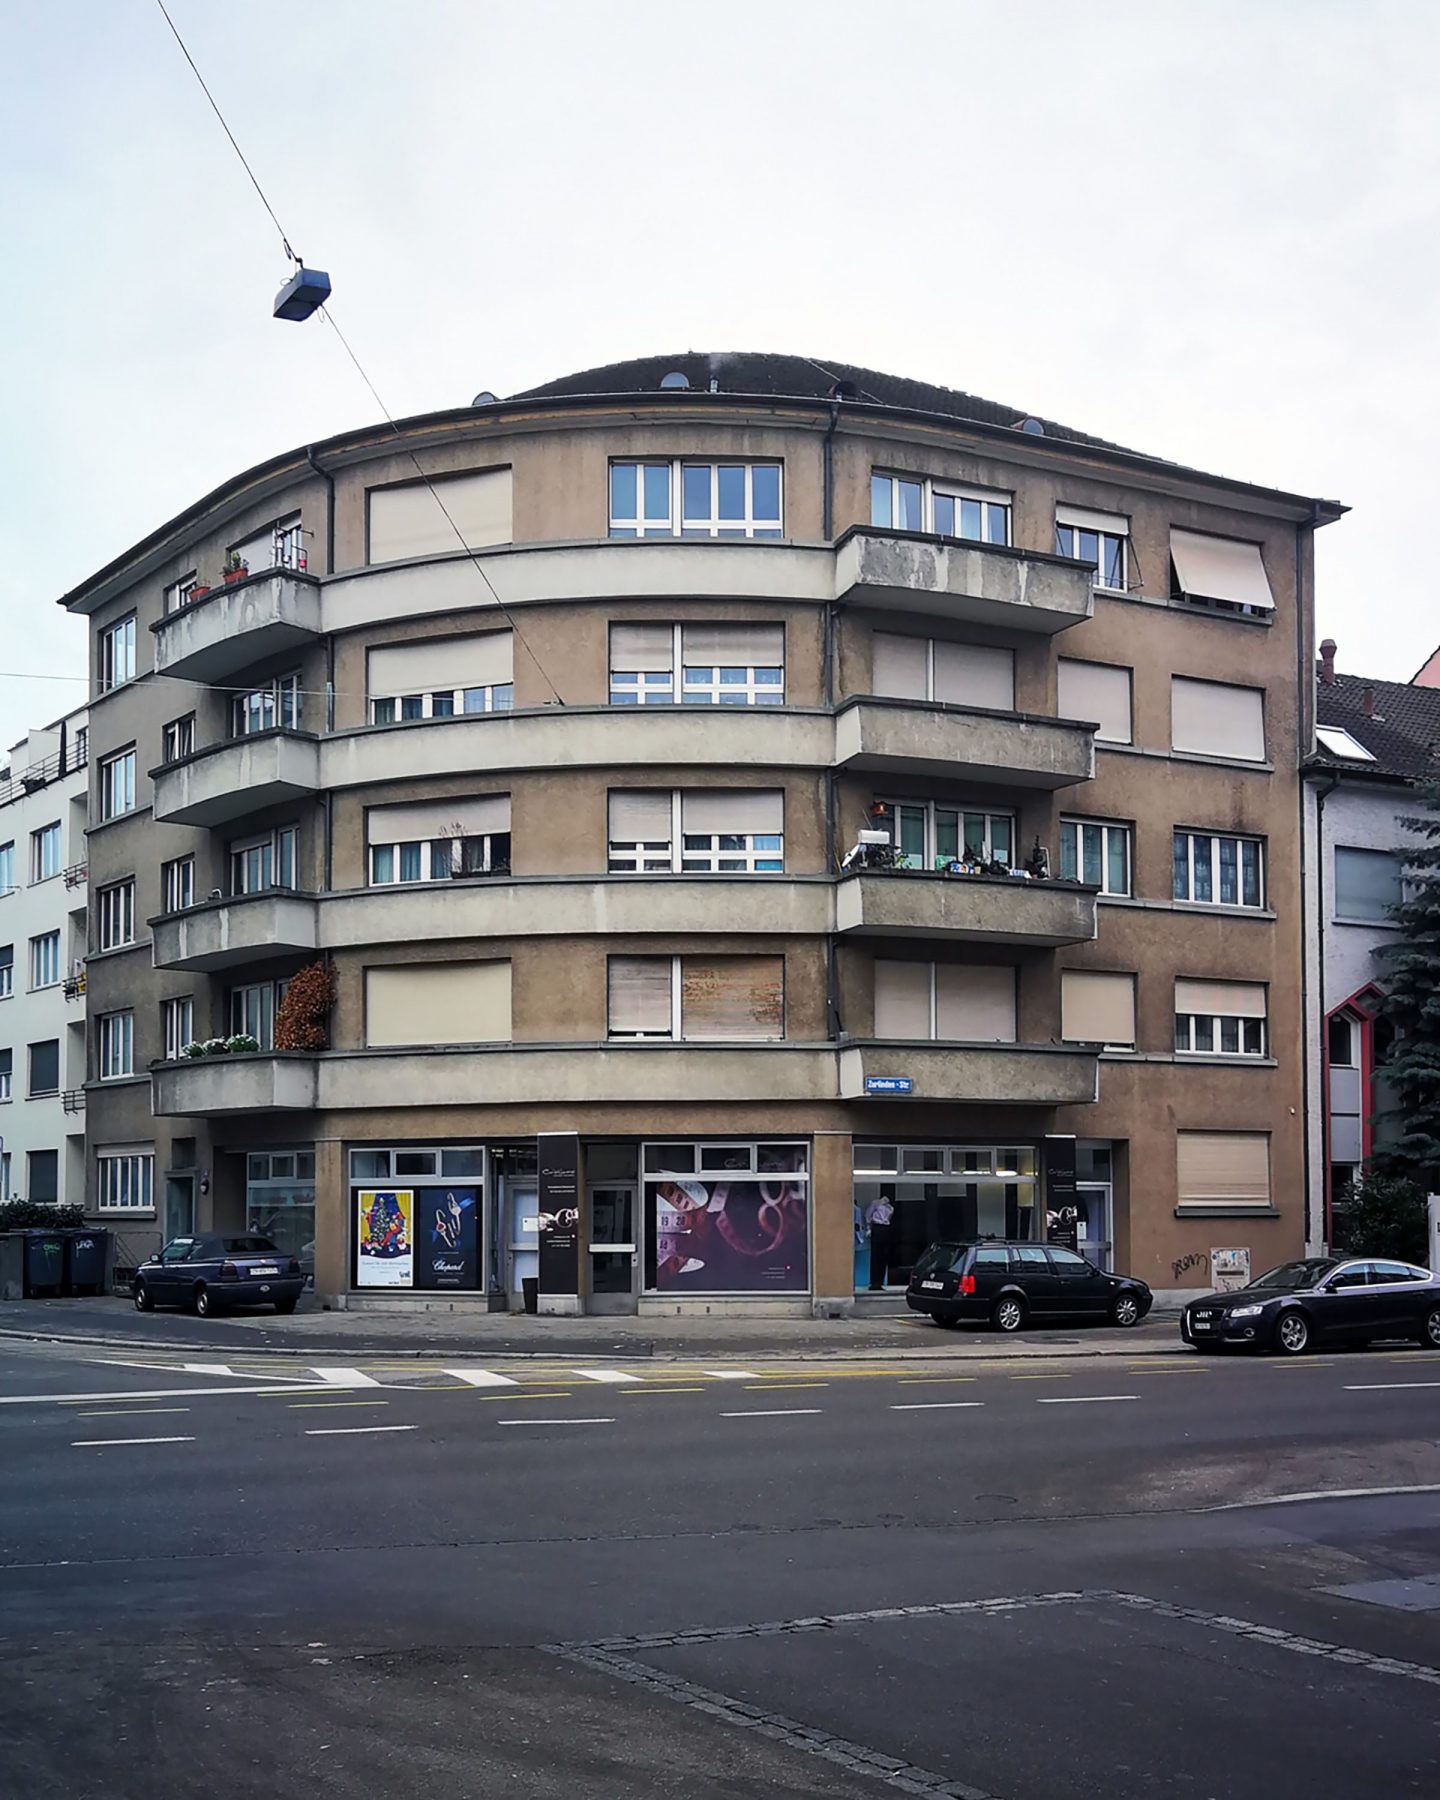 Bremgartnerstrasse, Zürich, ZH. Hildebrand Studios AG, Büro für Architektur und Städtebau, Zürich